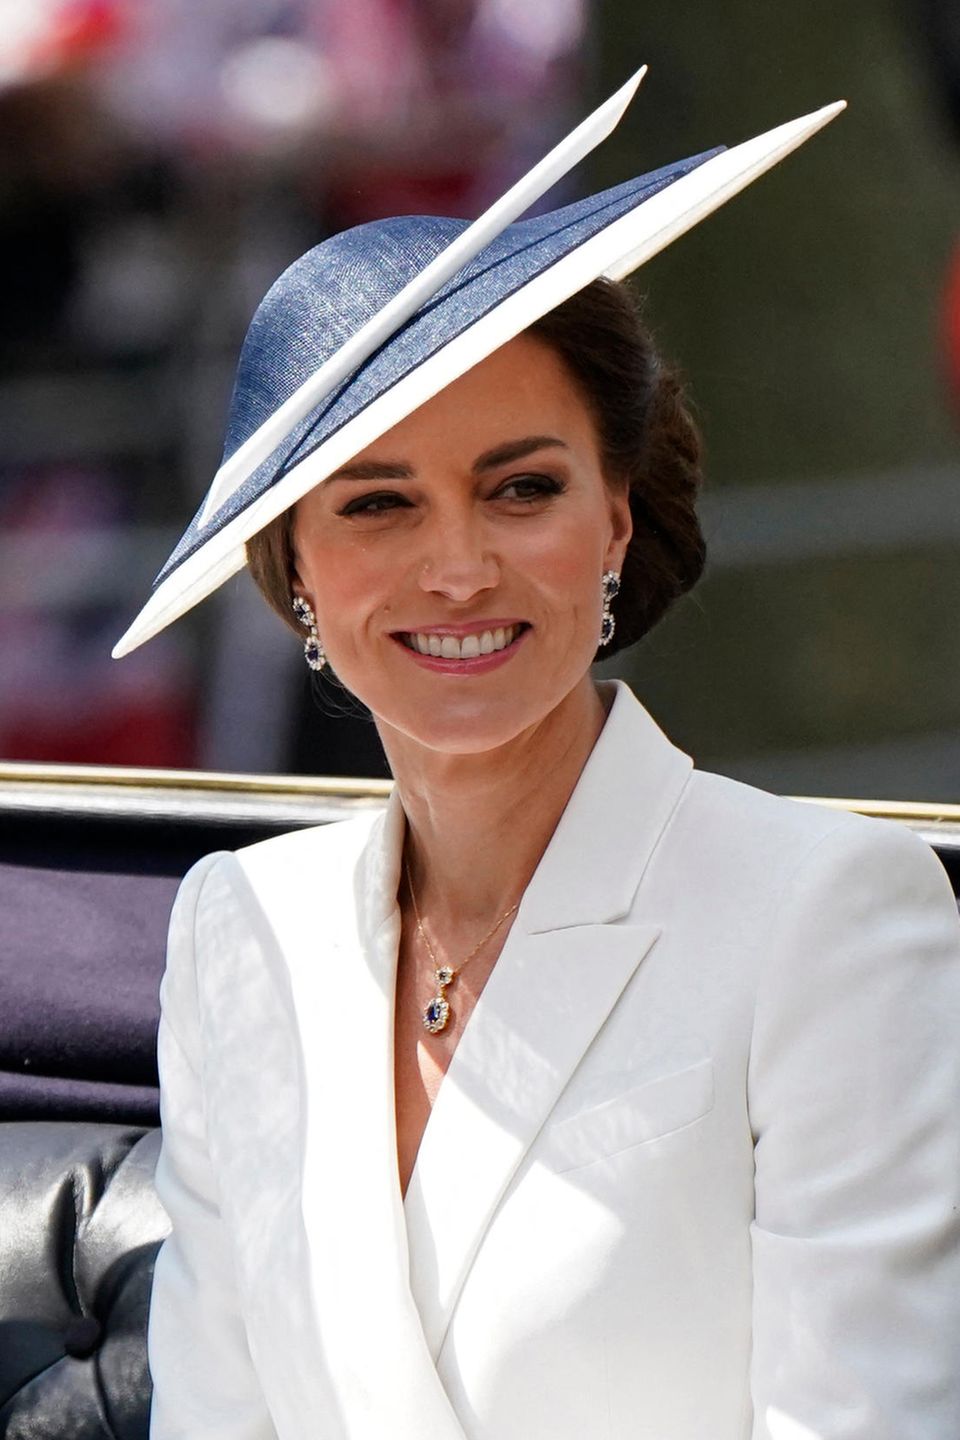 Wie bei so vielen wichtigen Events trägt Kate ihre hängenden Saphir-Ohrringe mit passender Kette, die – genau wie der dazu passende Verlobungsring – früher Prinzessin Diana gehörten. Ihre Haare trägt die Herzogin unter ihrem Fascinator in einem eleganten, tiefen Dutt.